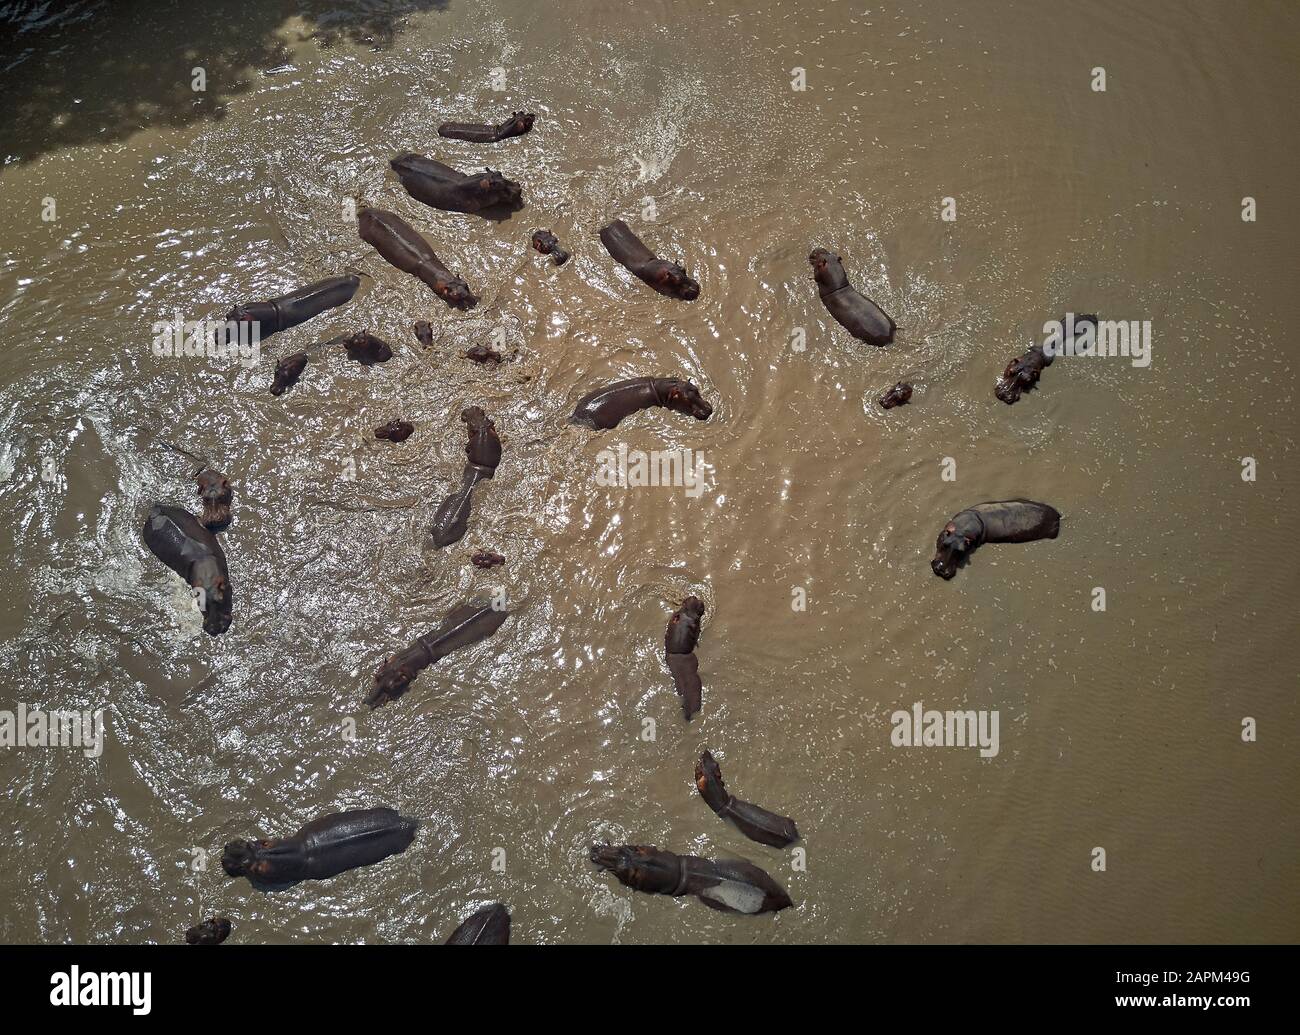 Benin, Aerial view of herd of hippos swimming in brown Pendjari River Stock Photo